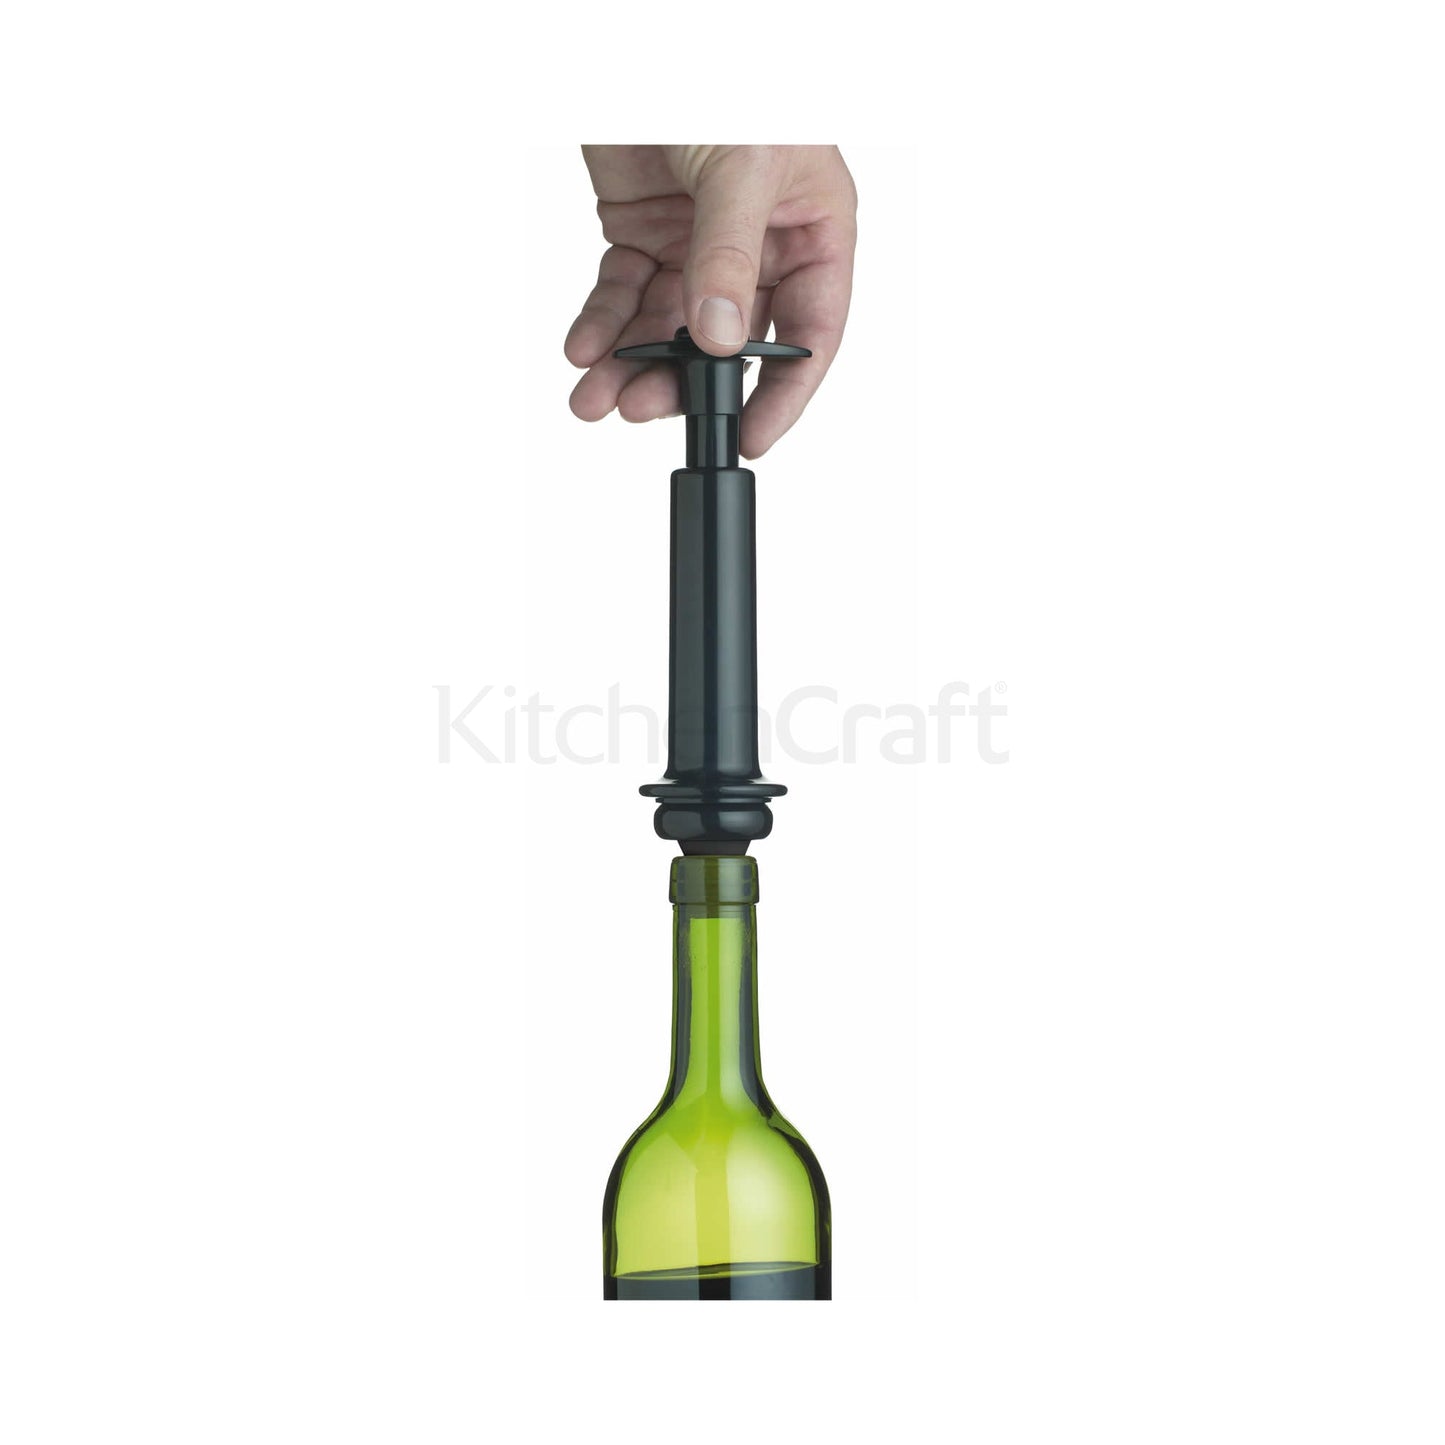 La pompa per vuoto Connoisseur deluxe facile da usare rimuove l'aria dalle bottiglie di vino aperte, prevenendo l'ossigenazione. In negozio e online su tuttochic.it